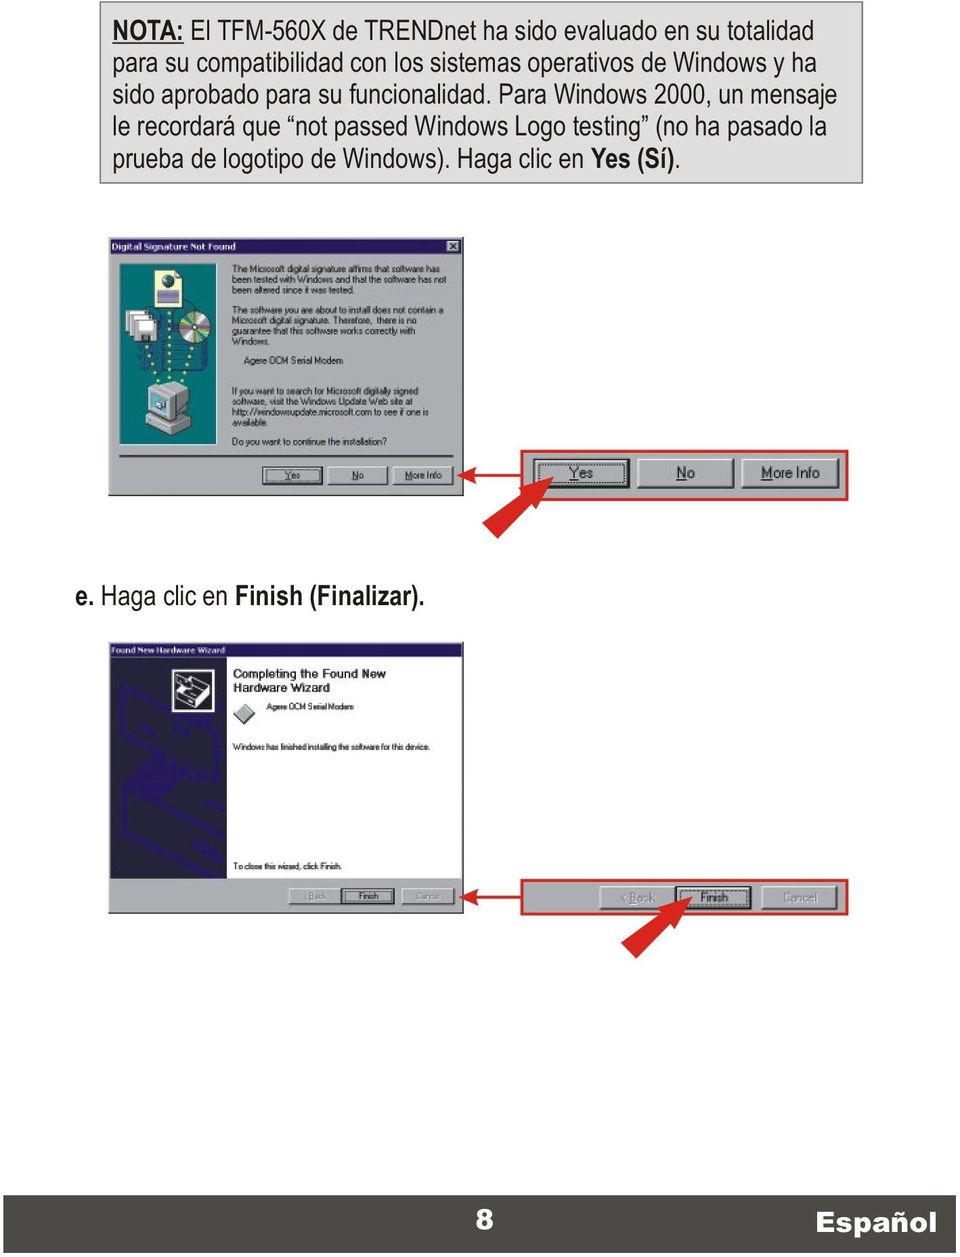 Para Windows 2000, un mensaje le recordará que not passed Windows Logo testing (no ha